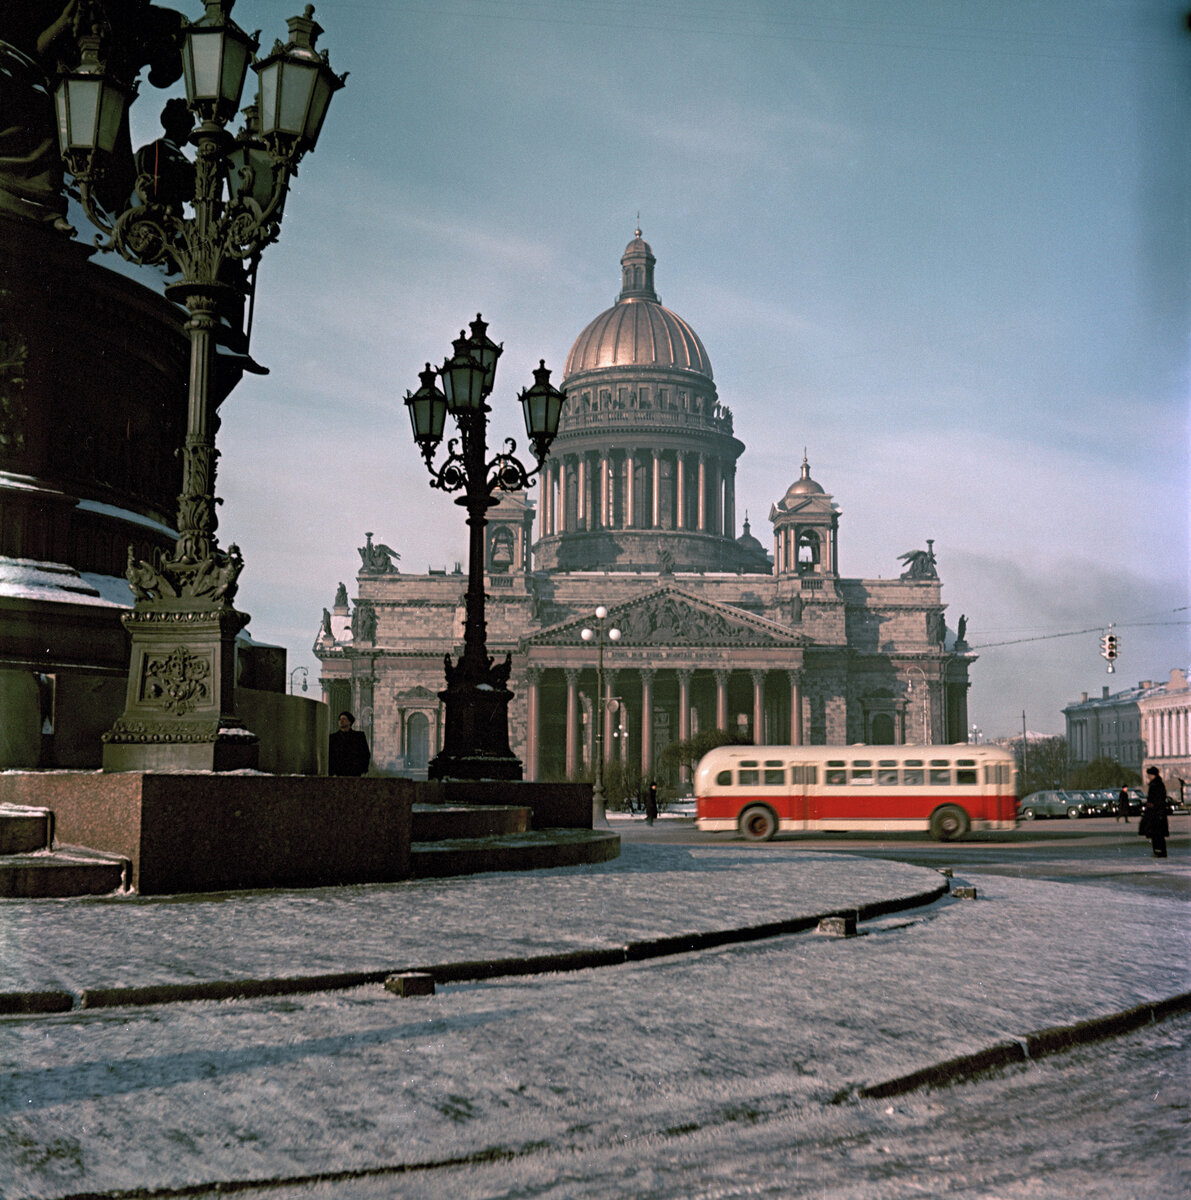 Всем огромный привет, друзья!
Наступил очередной понедельник, а это значит что мы с вами вновь отправляемся на историческую прогулку по городу Ленинград.